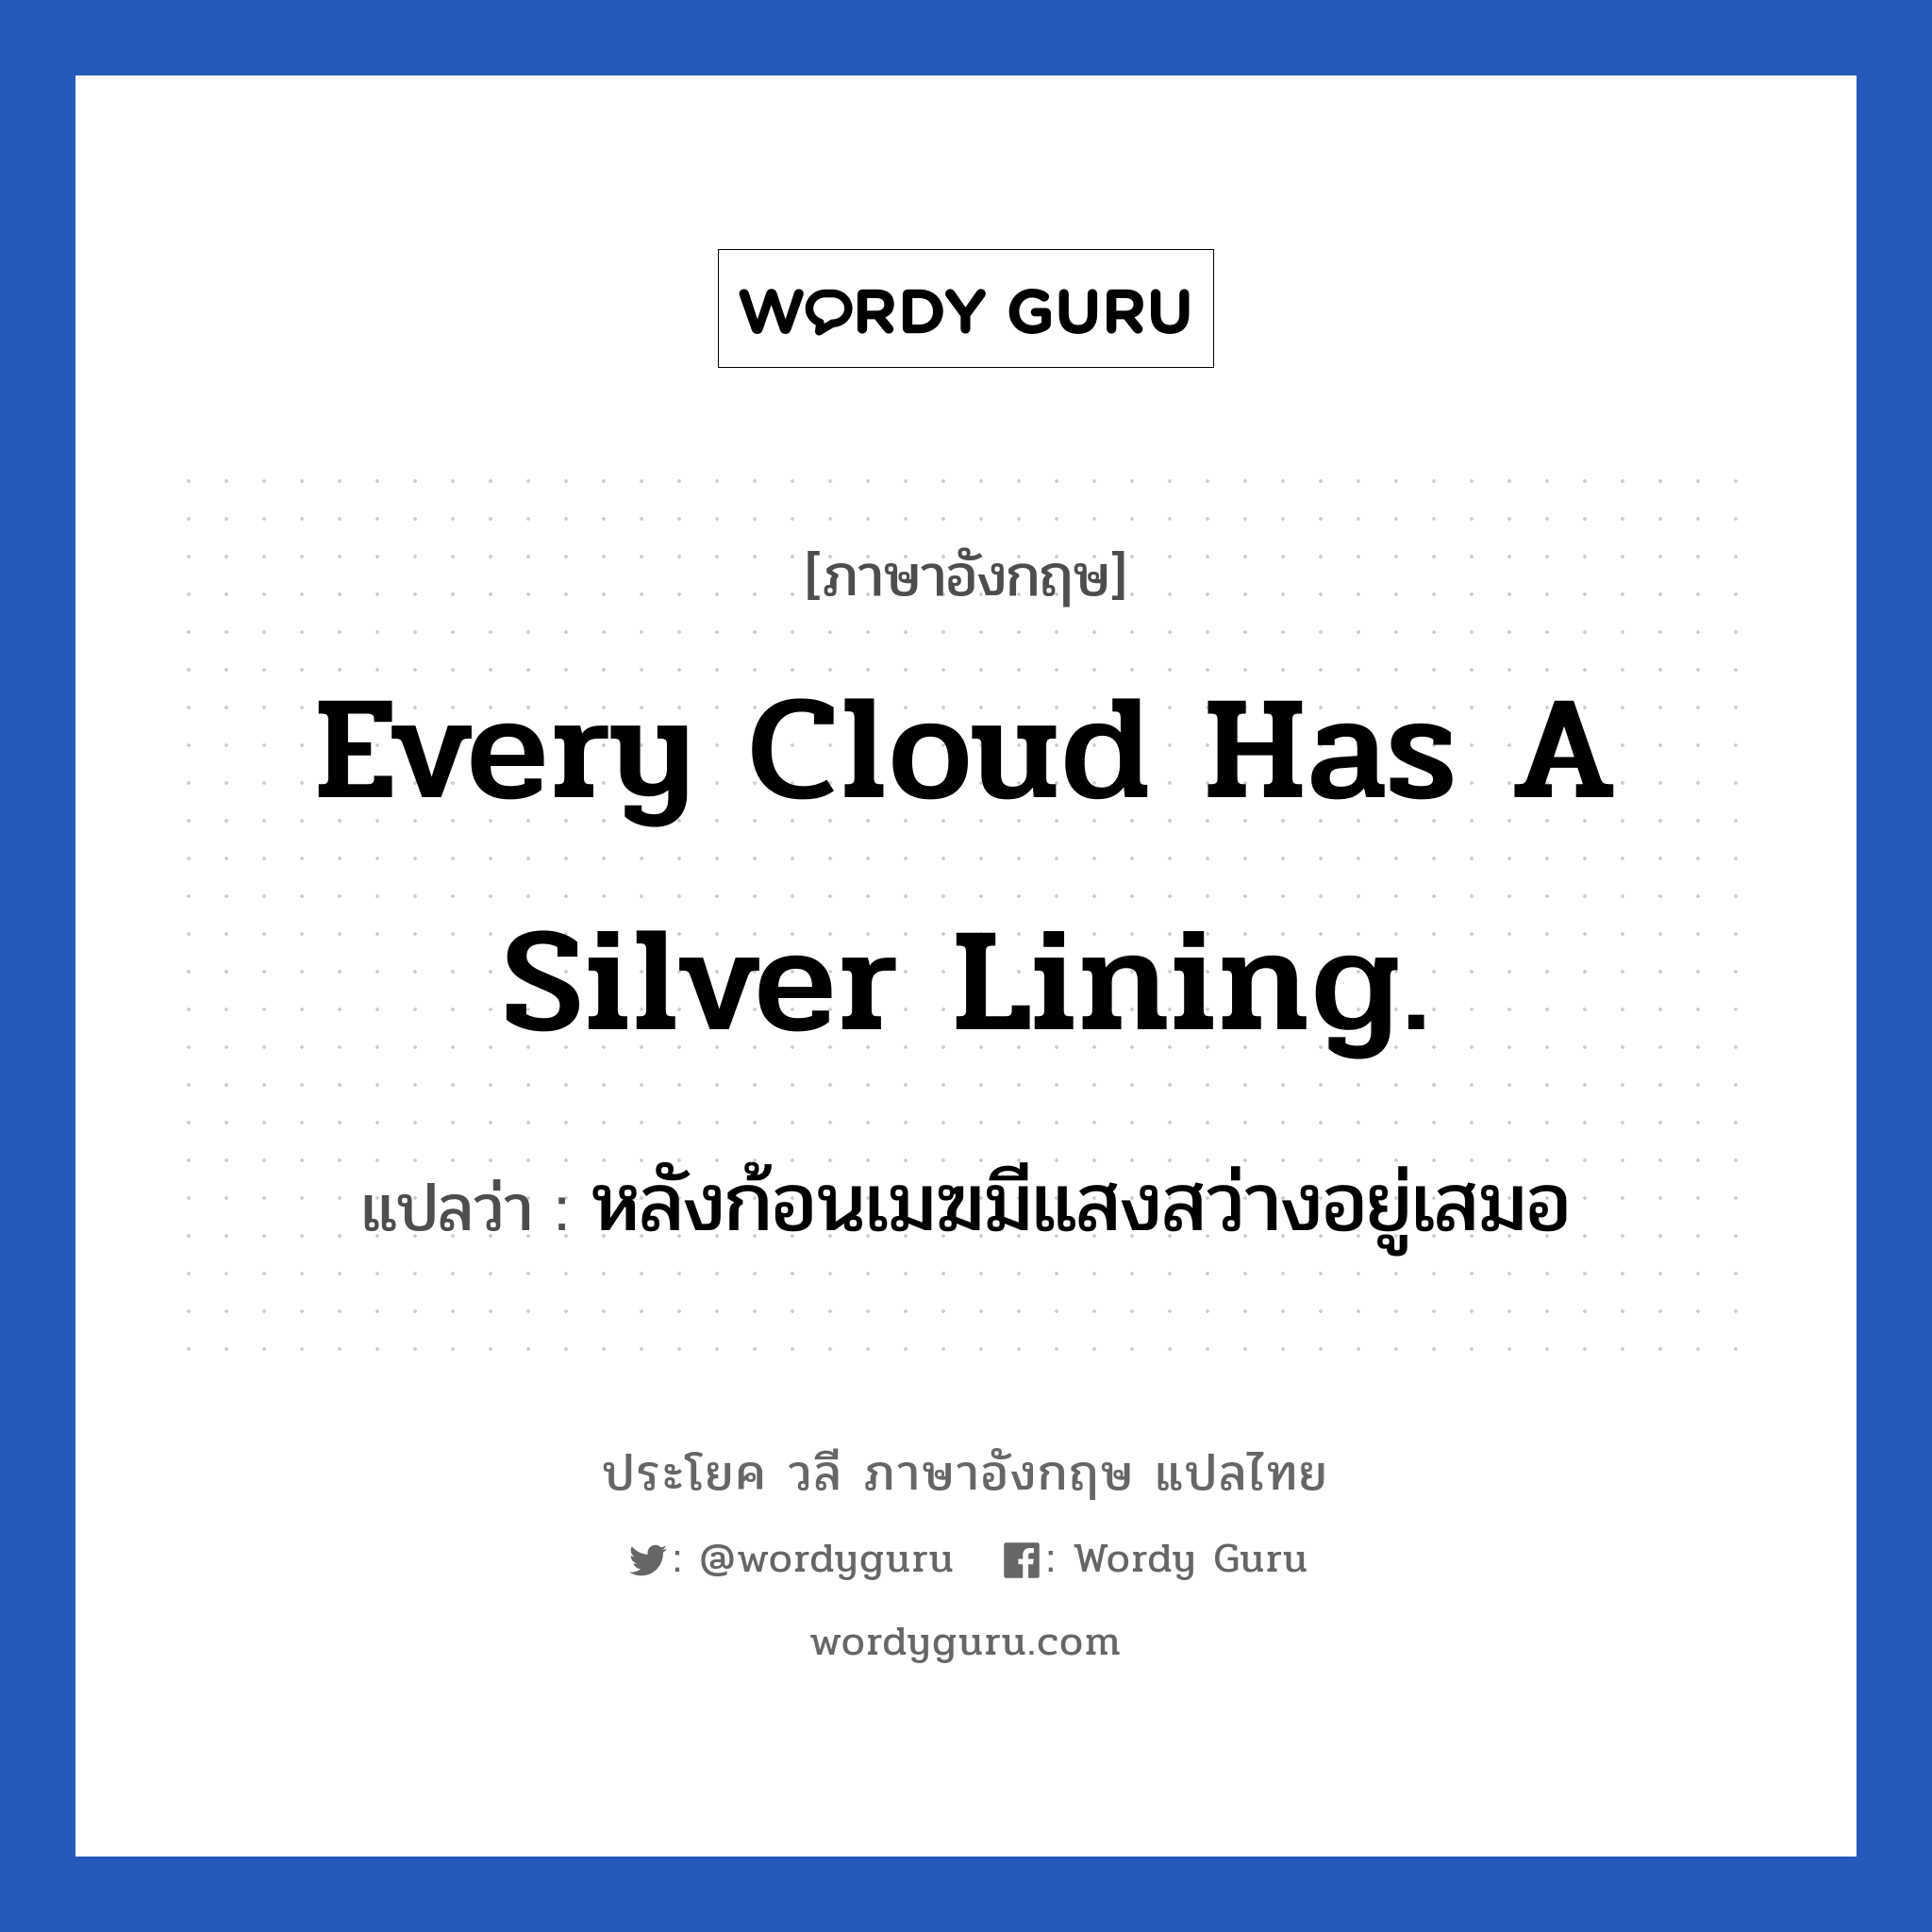 Every cloud has a silver lining. แปลว่า? เป็นประโยคในกลุ่มประเภท ให้กำลังใจ, วลีภาษาอังกฤษ Every cloud has a silver lining. แปลว่า หลังก้อนเมฆมีแสงสว่างอยู่เสมอ ย่อมมีสิ่งดี ๆ ตามหลังจากสิ่งที่ไม่ดีเสมอ หมวด ให้กำลังใจ